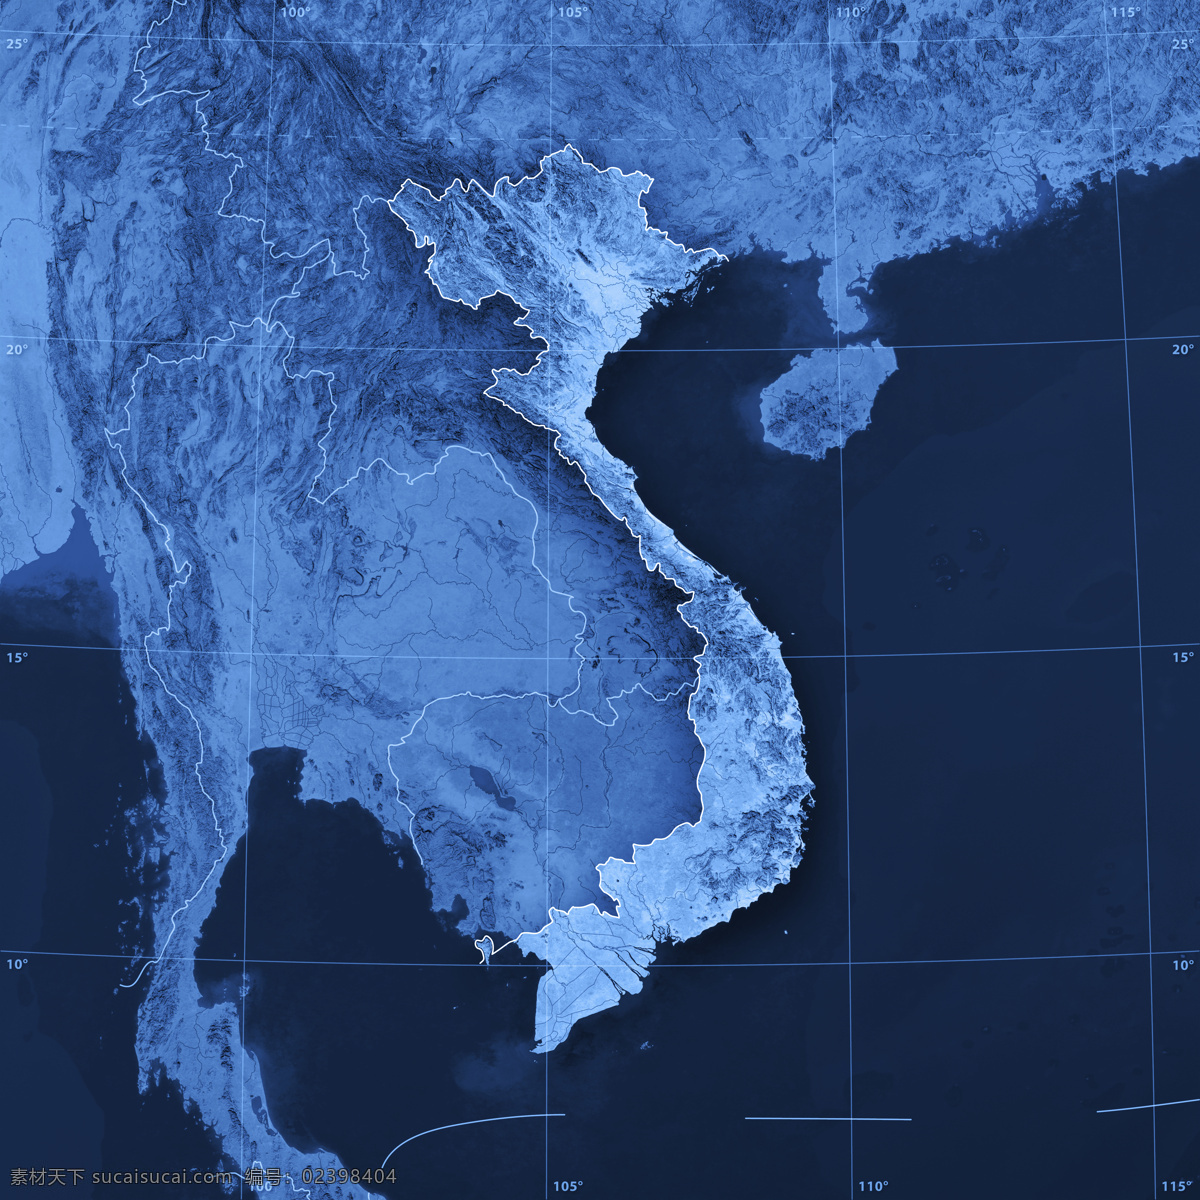 越南 背景 越南地图 地图 蓝色地图 地图模板 经线 纬线 经度 纬度 办公学习 生活百科